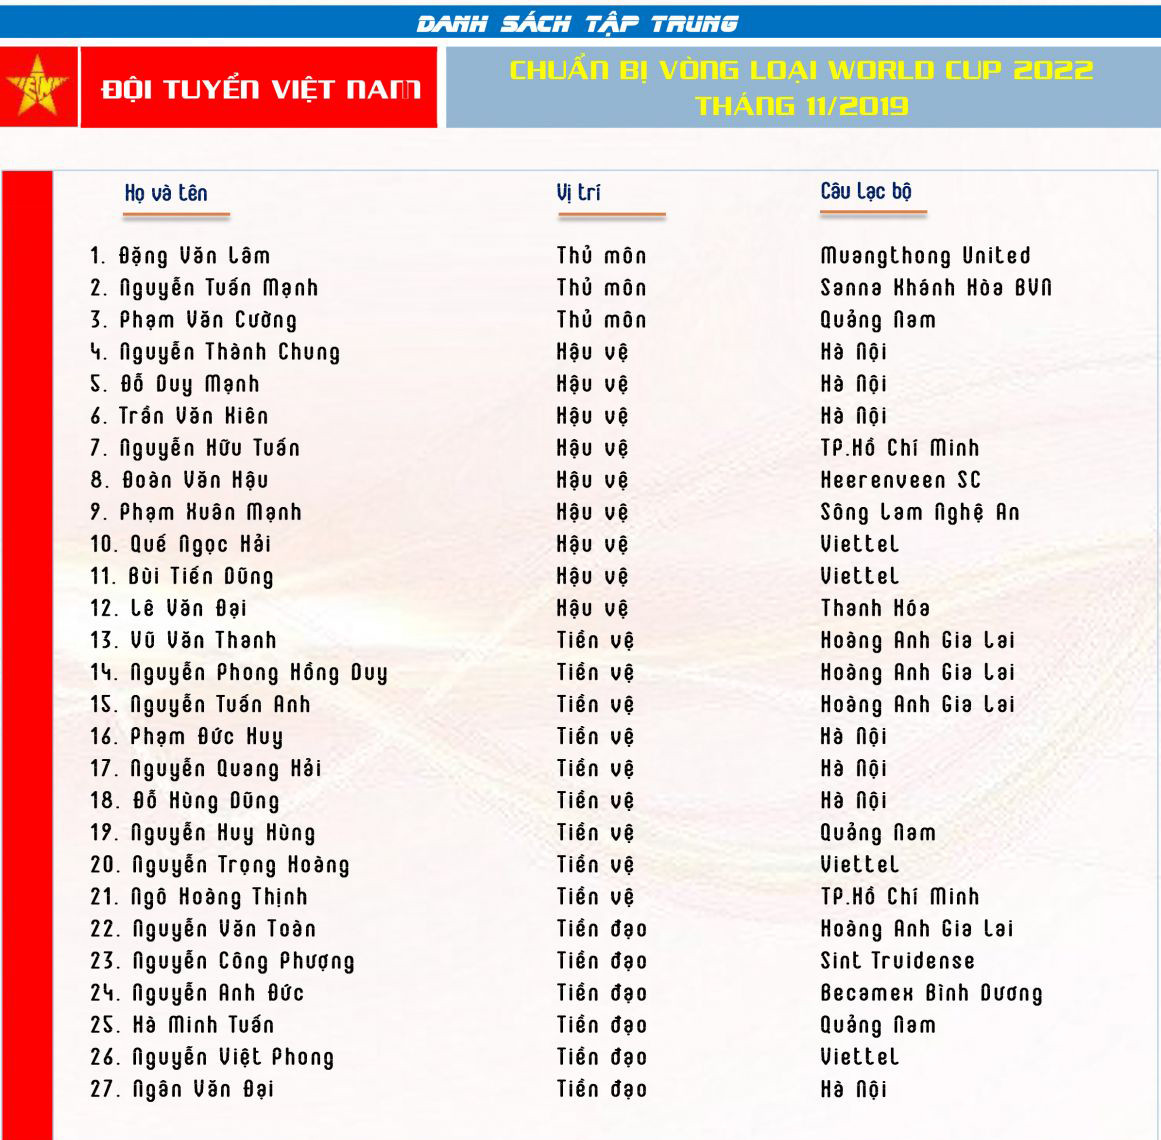 Danh sách tập trung ĐTQG Việt Nam chuẩn bị thi đấu Vòng loại World Cup 2022 (tháng 11/2019). Ảnh: VFF